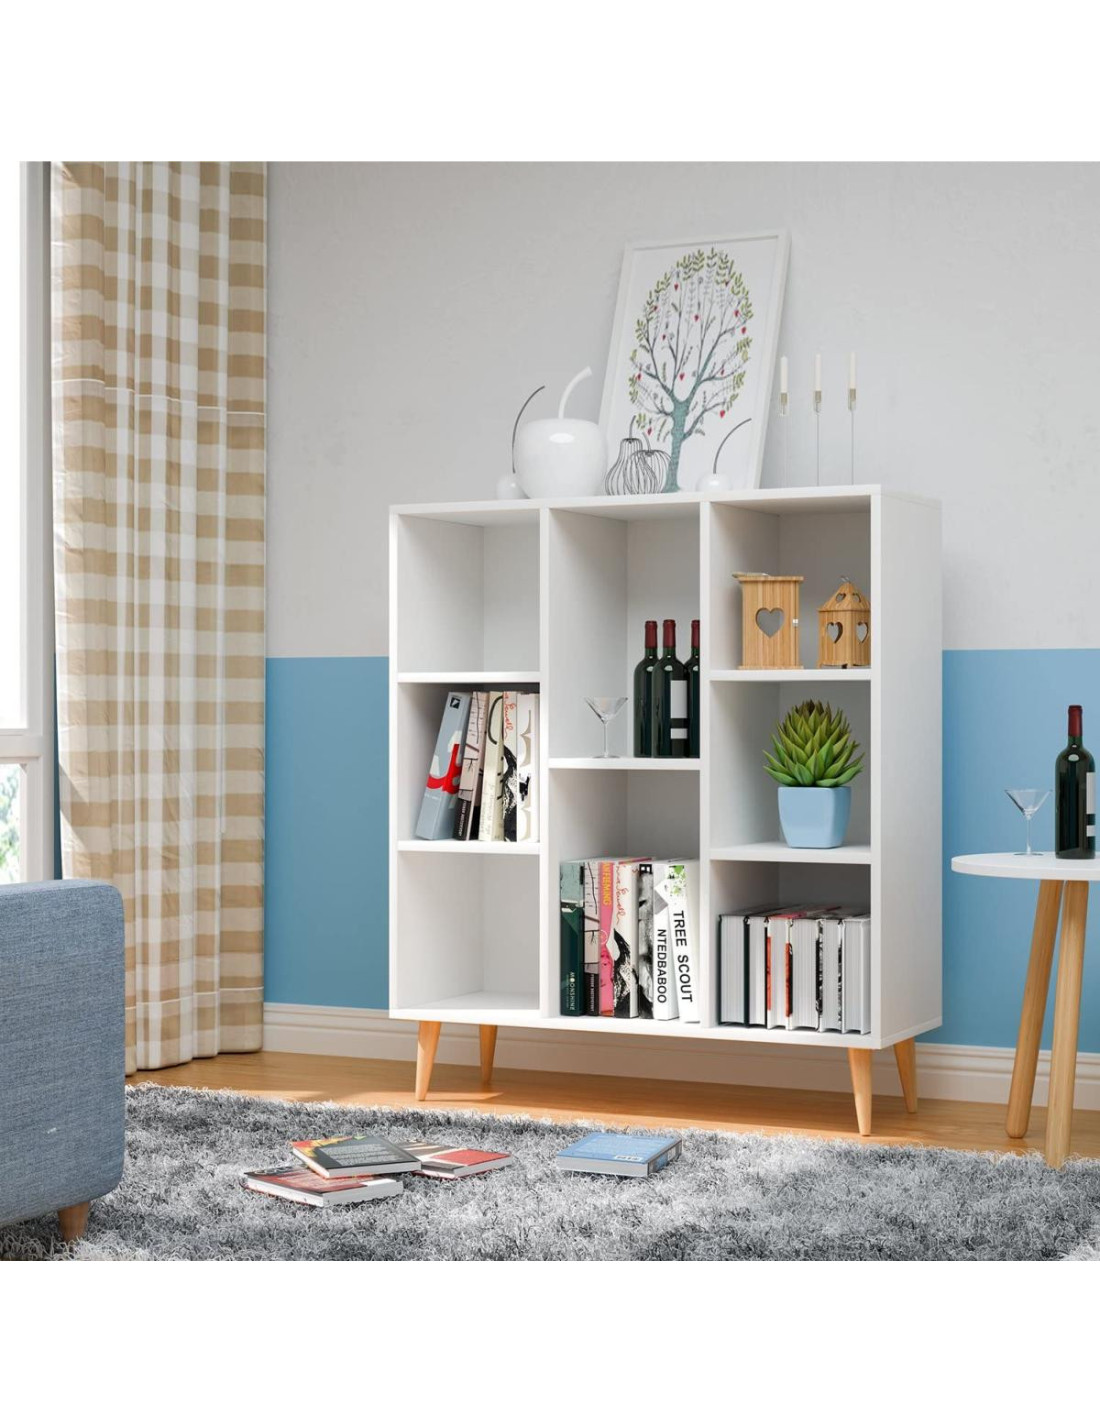 https://images2.cielterre-commerce.fr/35191-thickbox_default/bibliotheque-livres-8-compartiments-scandinave-etagere-rangement-salon-meuble-rangement.jpg